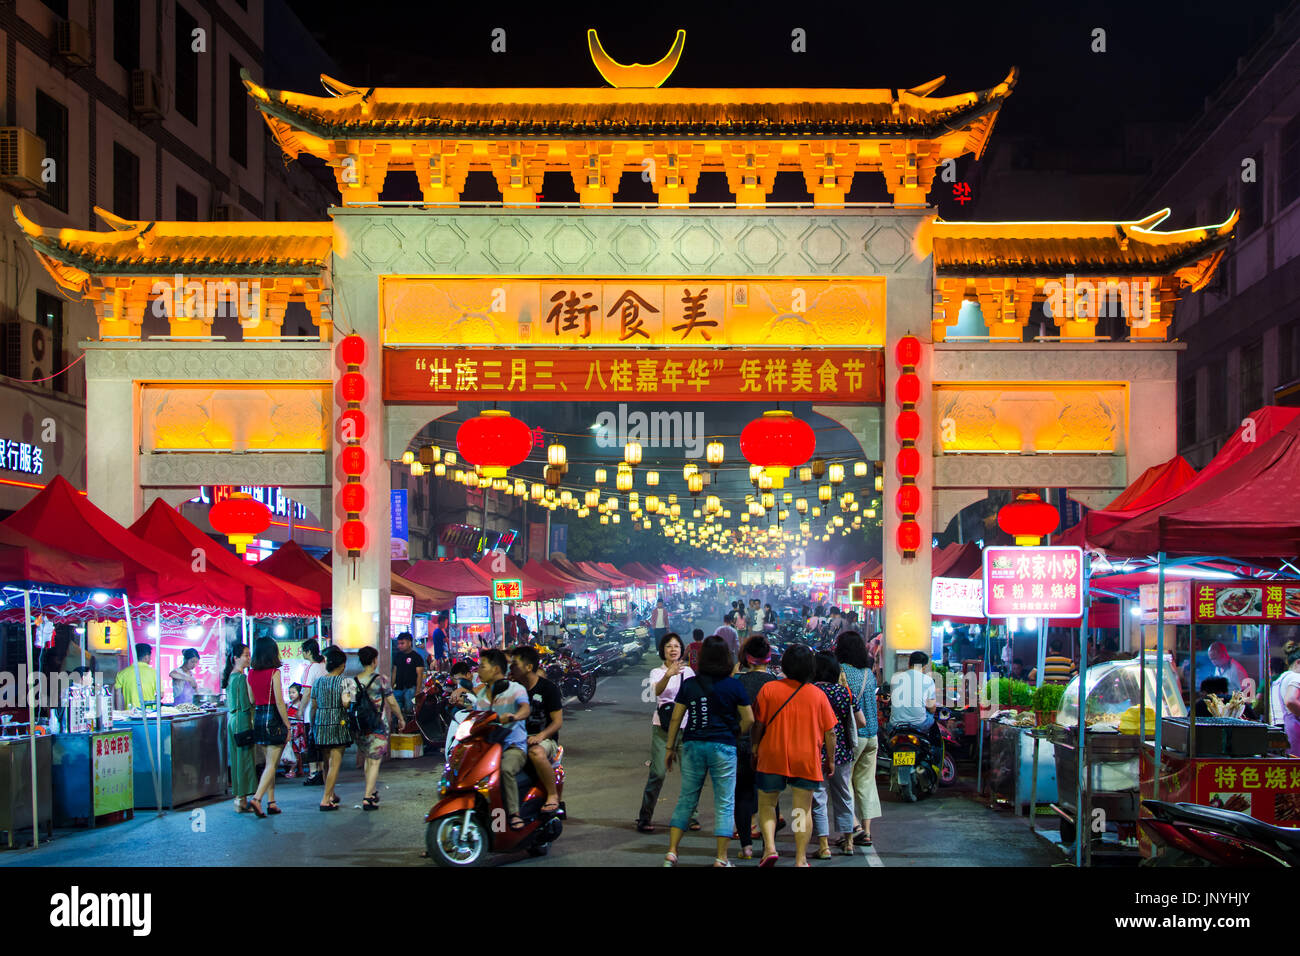 PINGXIANG, CHINA - 21. Mai 2017: Chinesisch (traditionell) Tor führt in beliebte Lebensmittel-Straße mit Menschen überfüllt. Pingxiang ist die Grenze von China Stockfoto